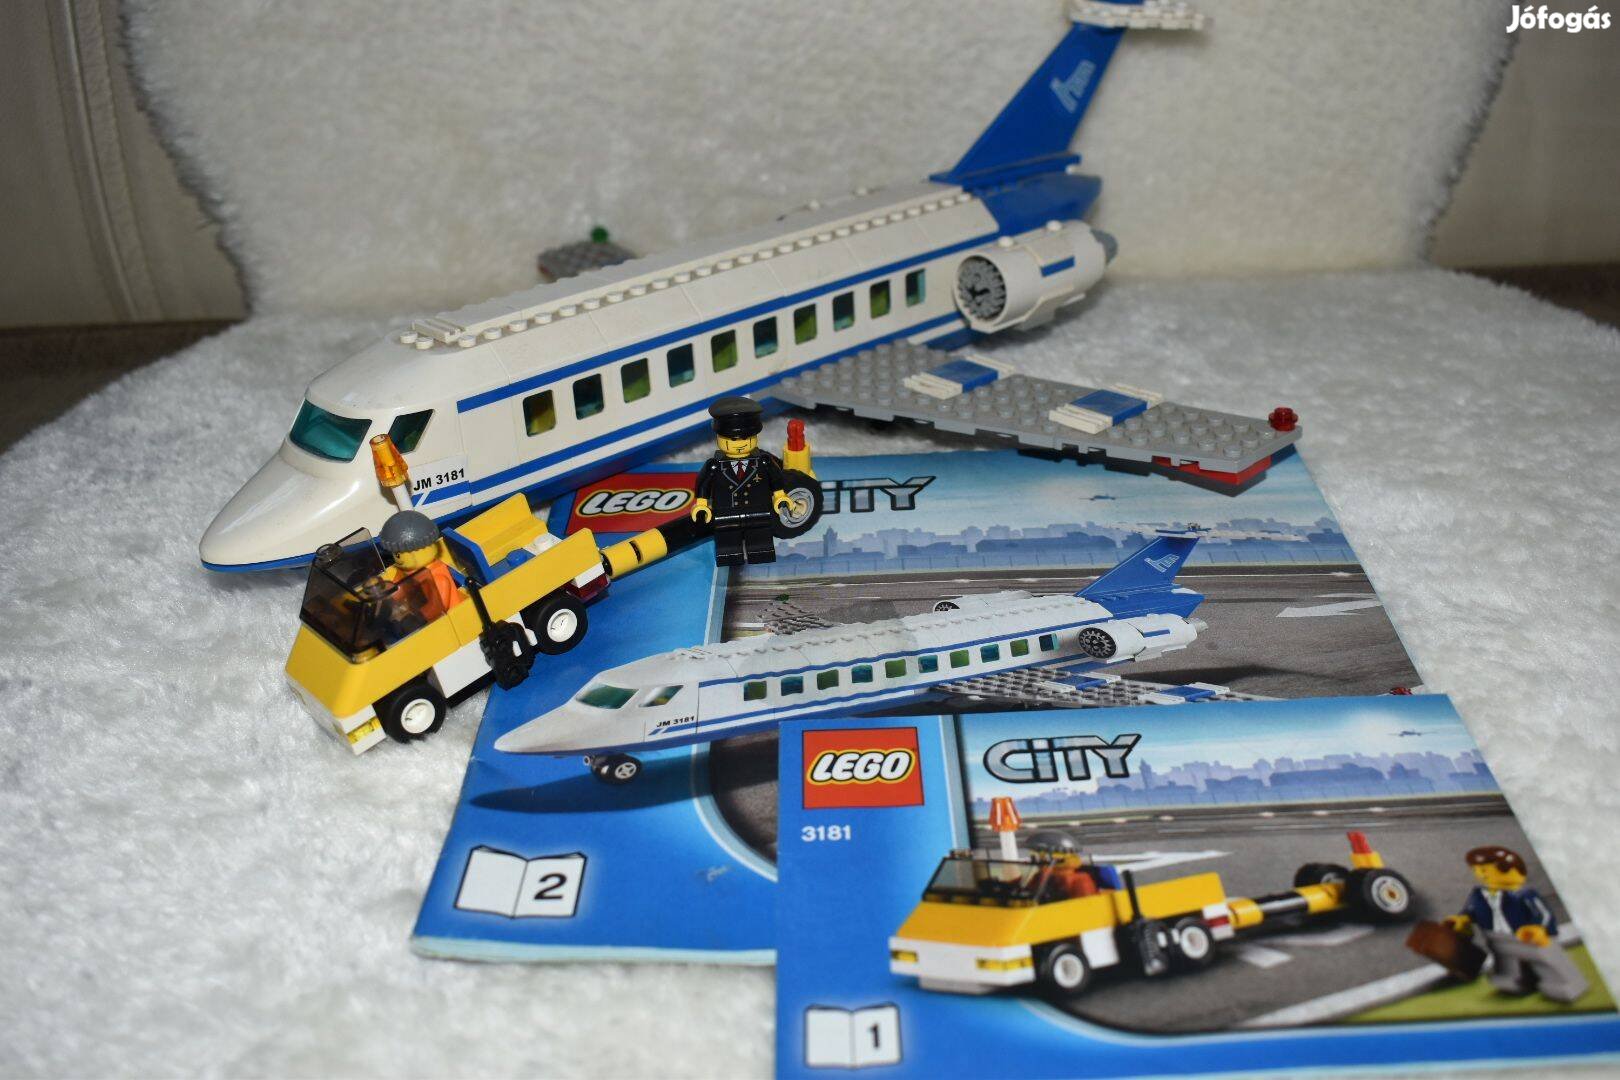 Lego City 3181 (Utasszállító repülő)